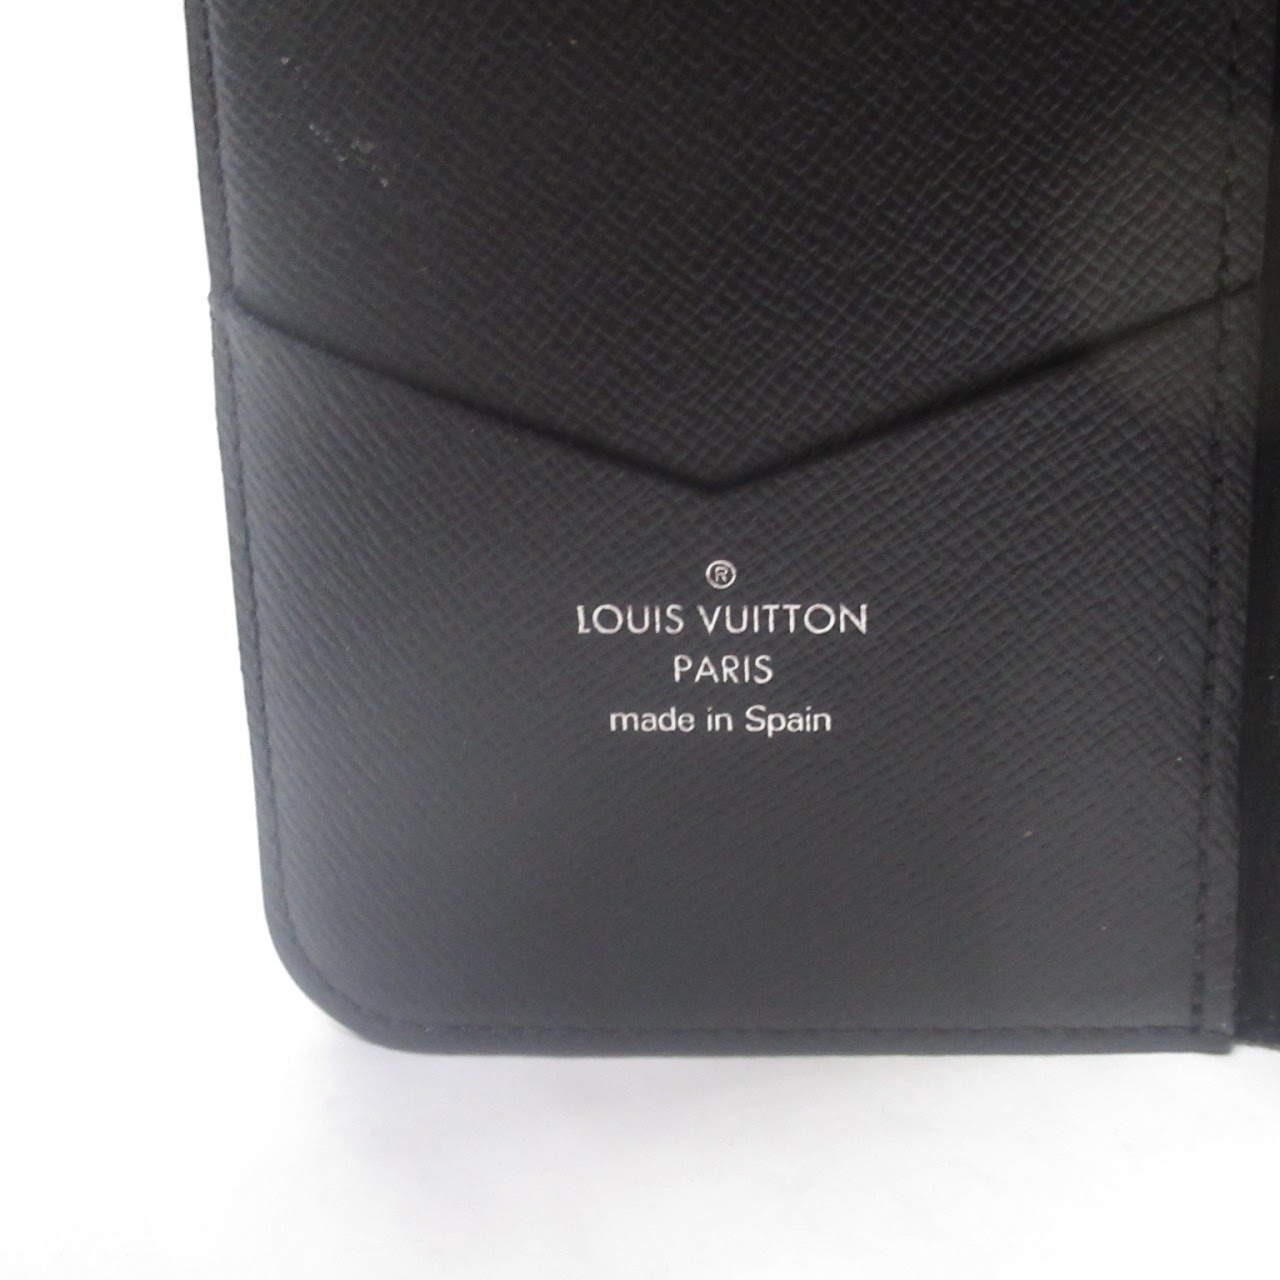 Louis Vuitton iPhone Folio